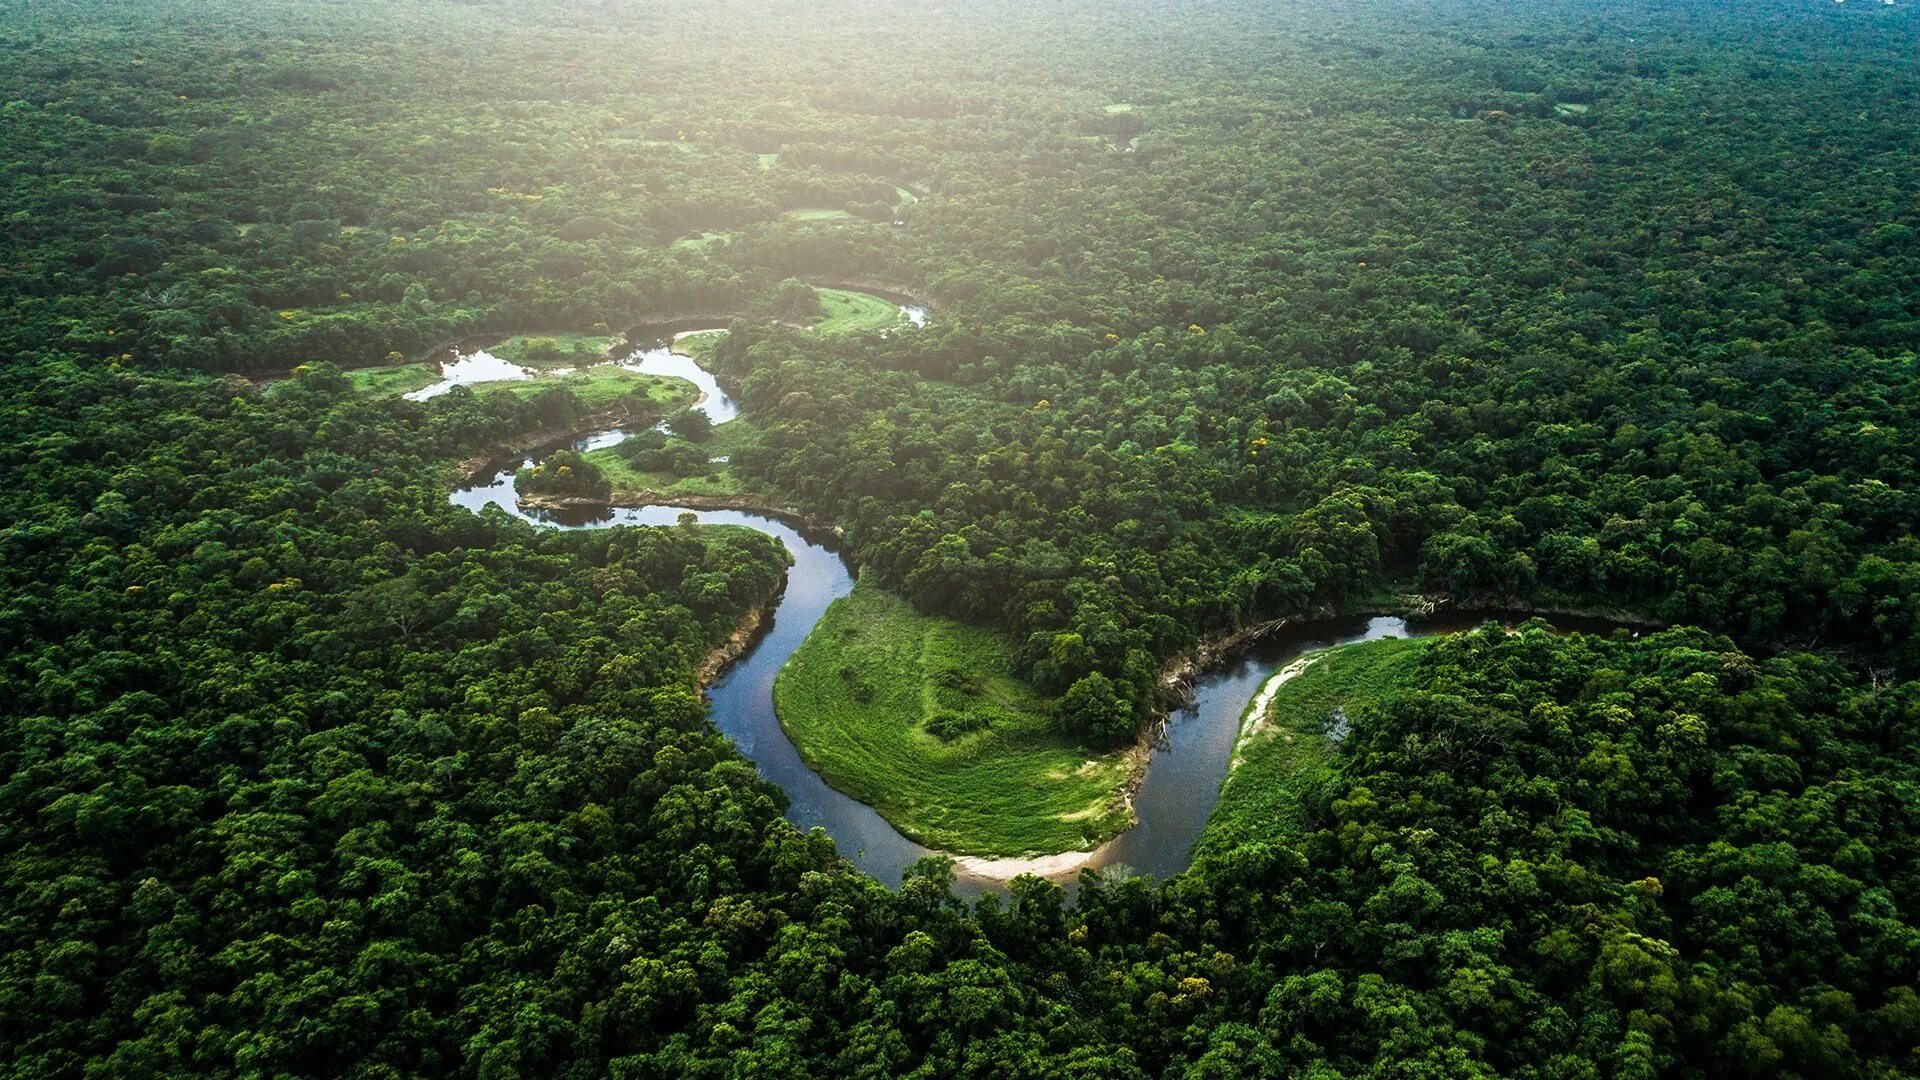 Реки страны бразилия. Бразилия тропические леса Сельва. Сельва амазонки, Южная Америка. Река Амазонка в Бразилии. Тропические леса амазонки в Бразилии.